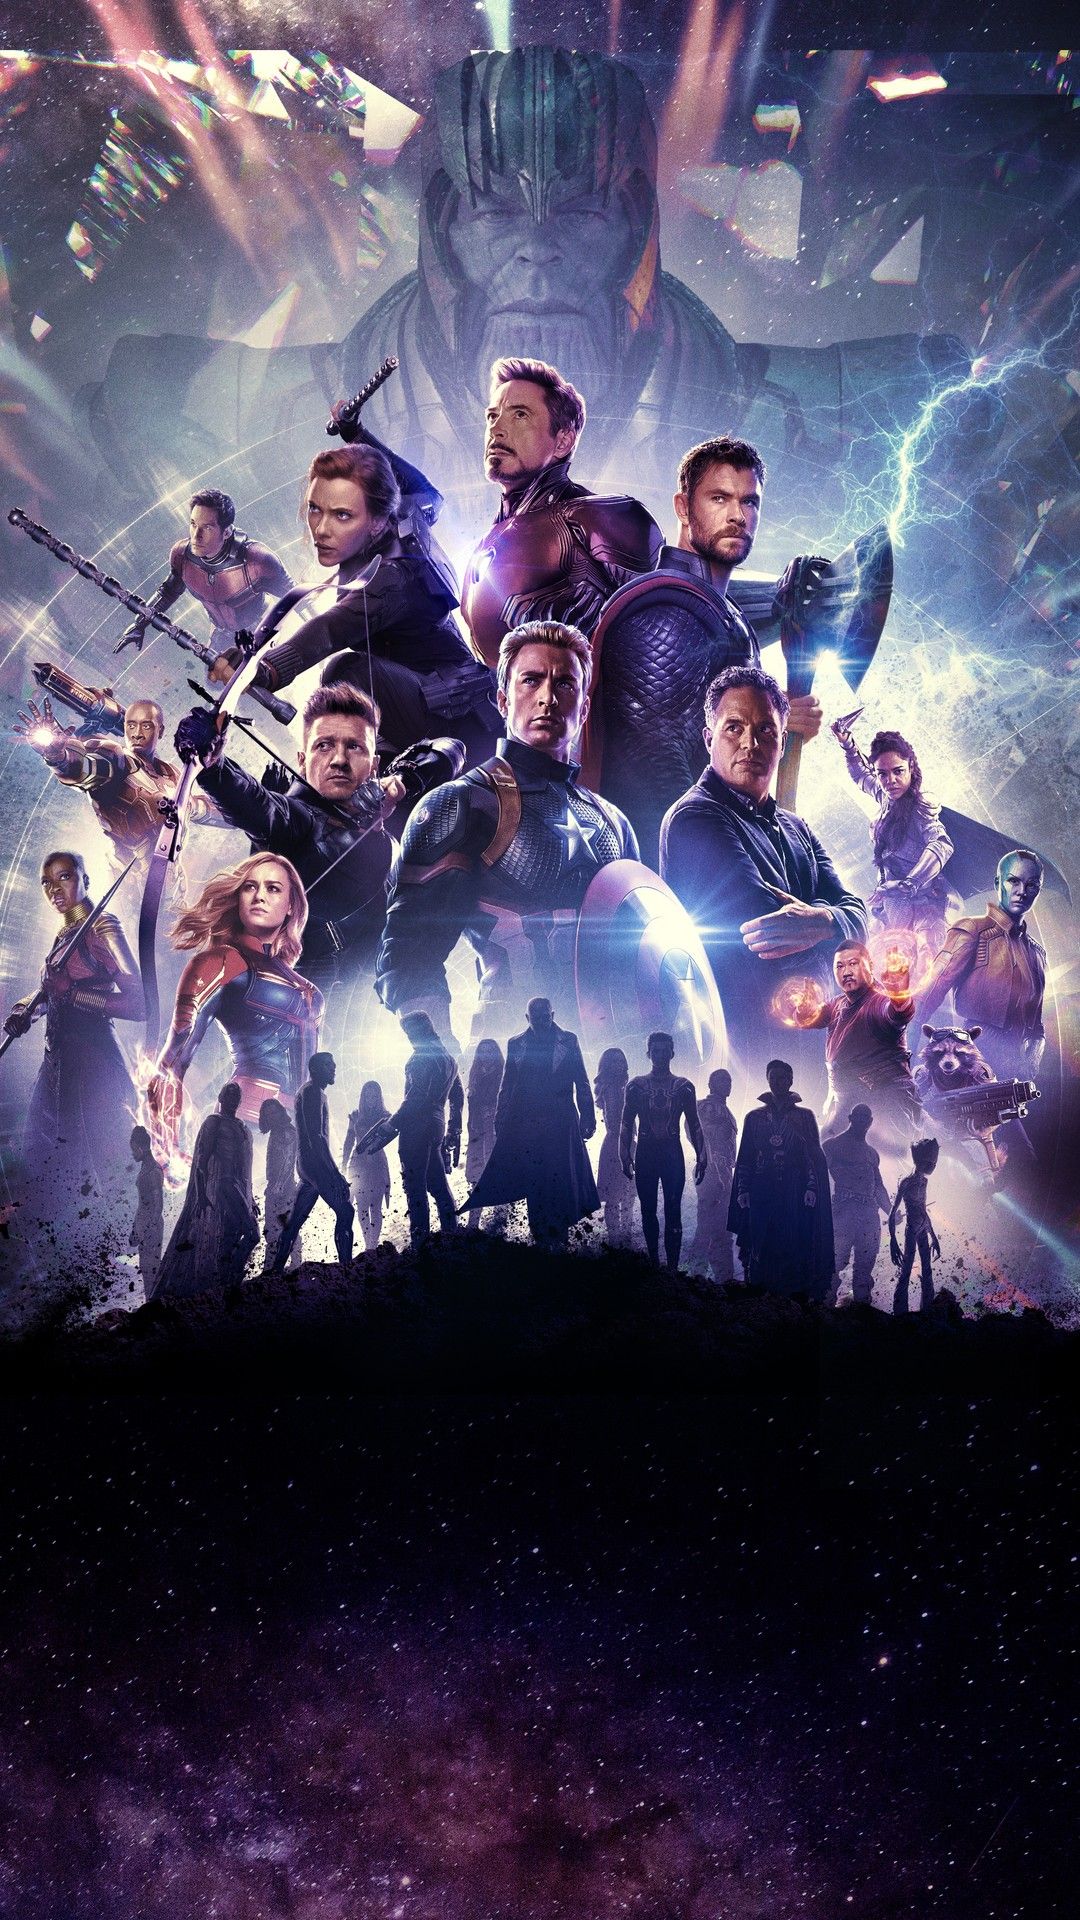 Avengers Endgame 2019 Android Wallpaper   Best Movie Poster